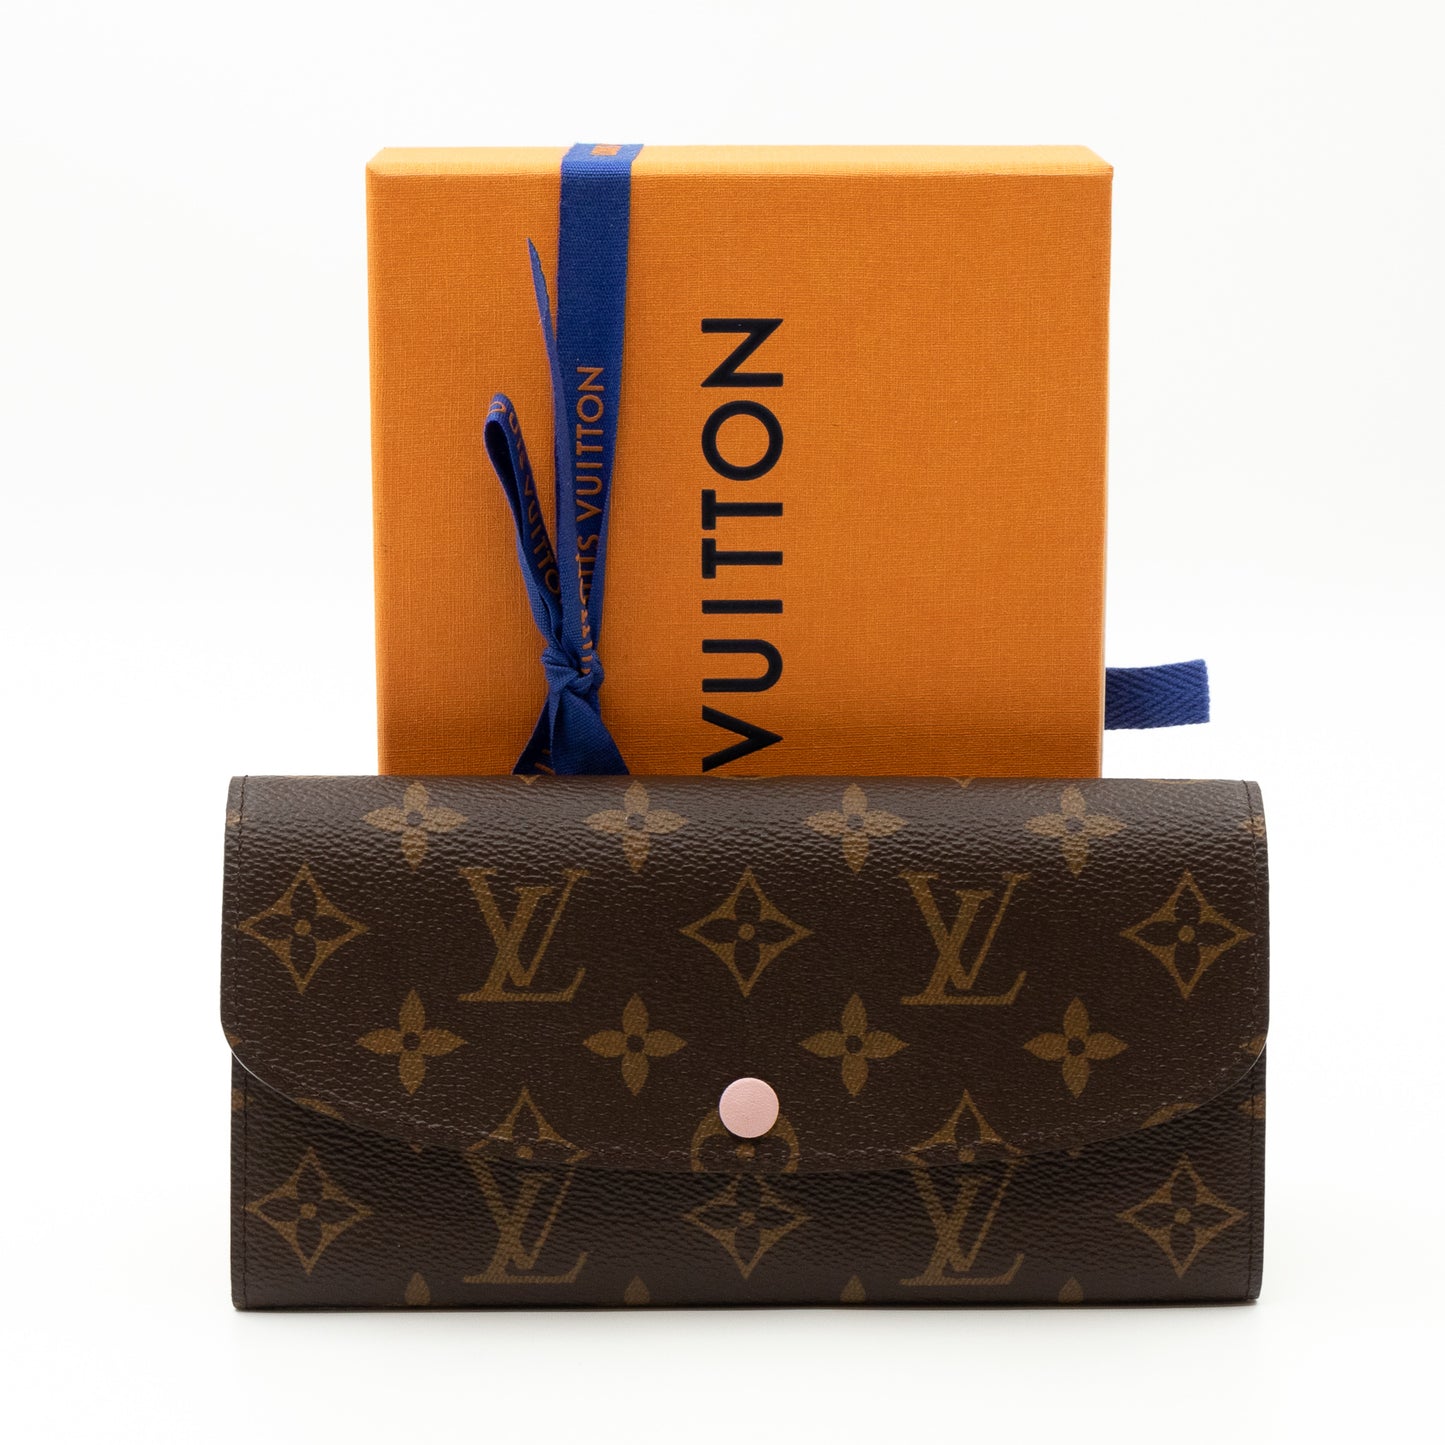 Louis Vuitton – Louis Vuitton Emilie Wallet Monogram Rose